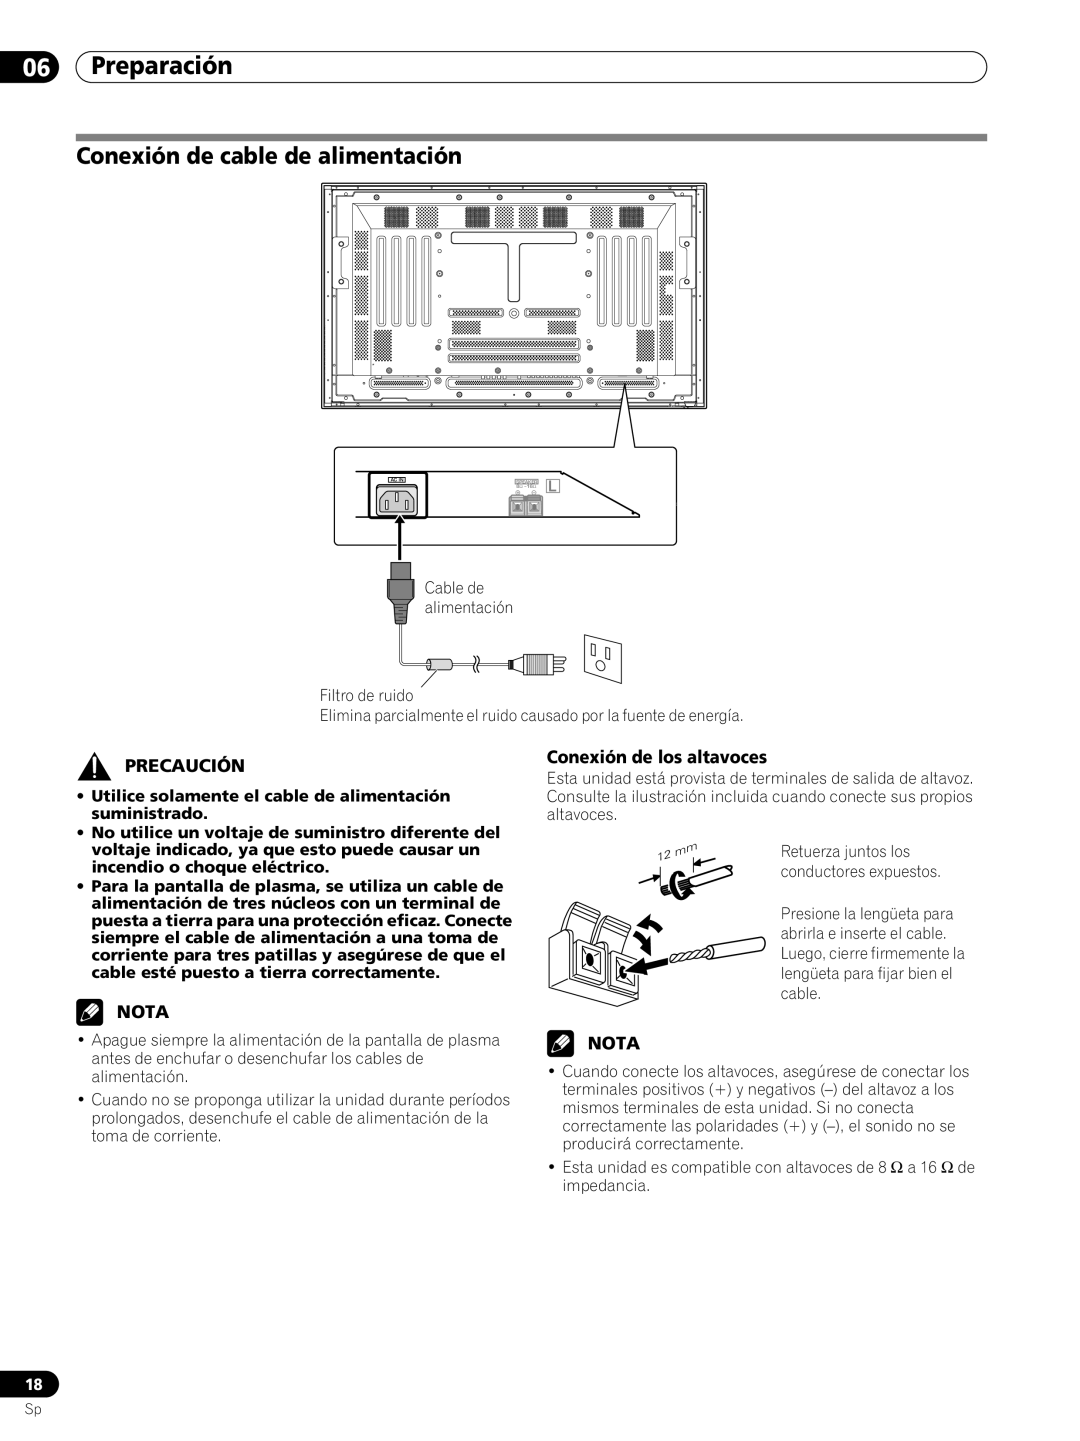 Pioneer PRO-FHD1 Conexión de cable de alimentación, Preparación, Precaución, Nota, Conexión de los altavoces 